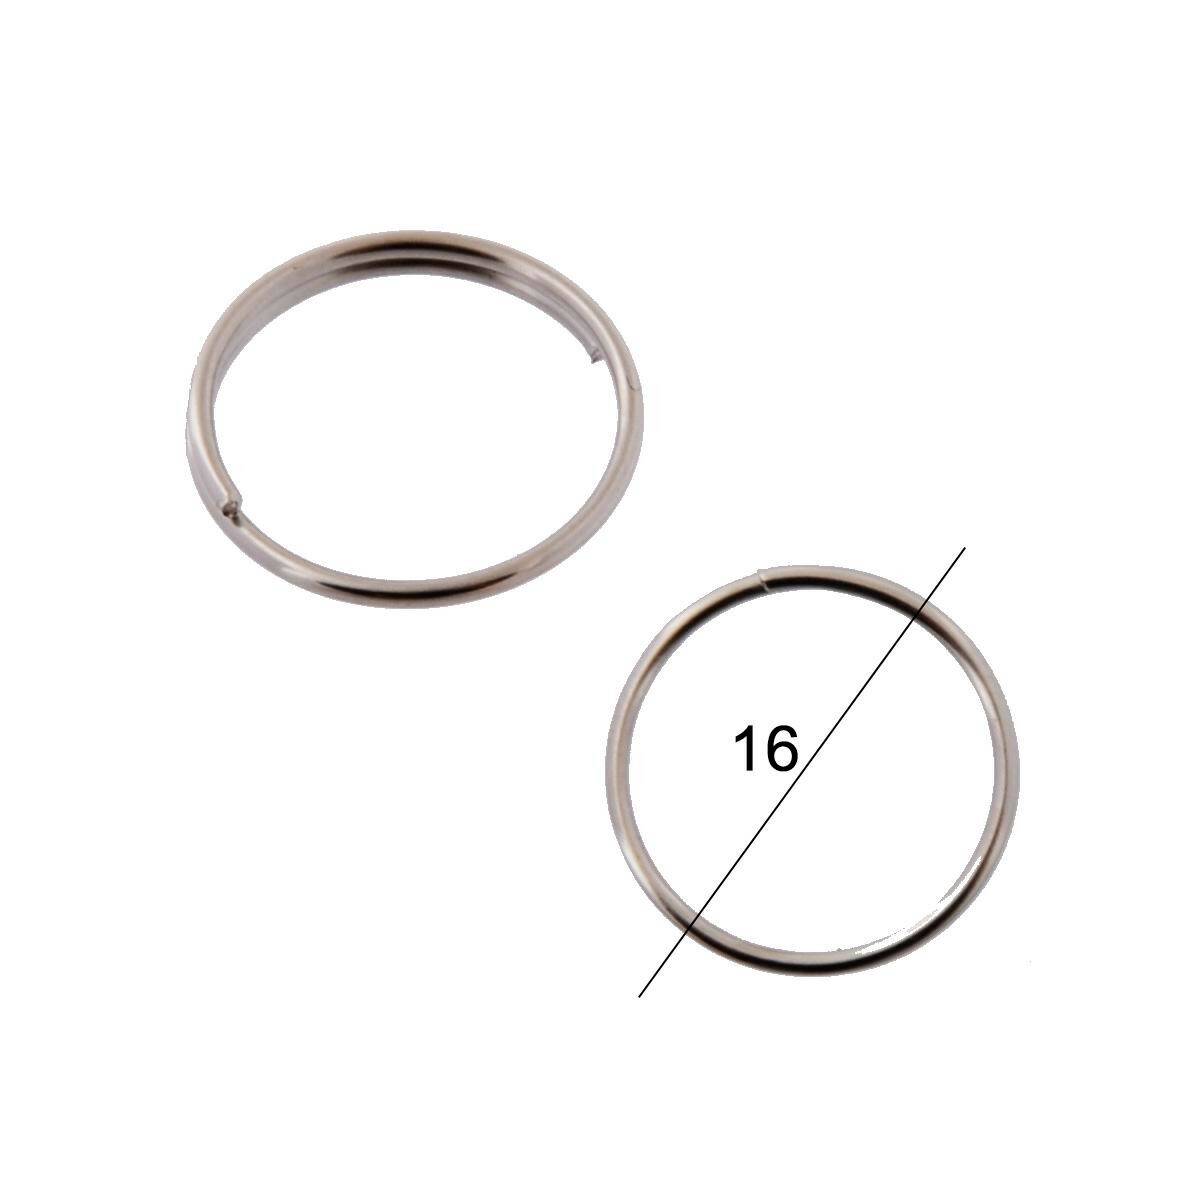 Key rings for keys WIS normal diameter 16mm